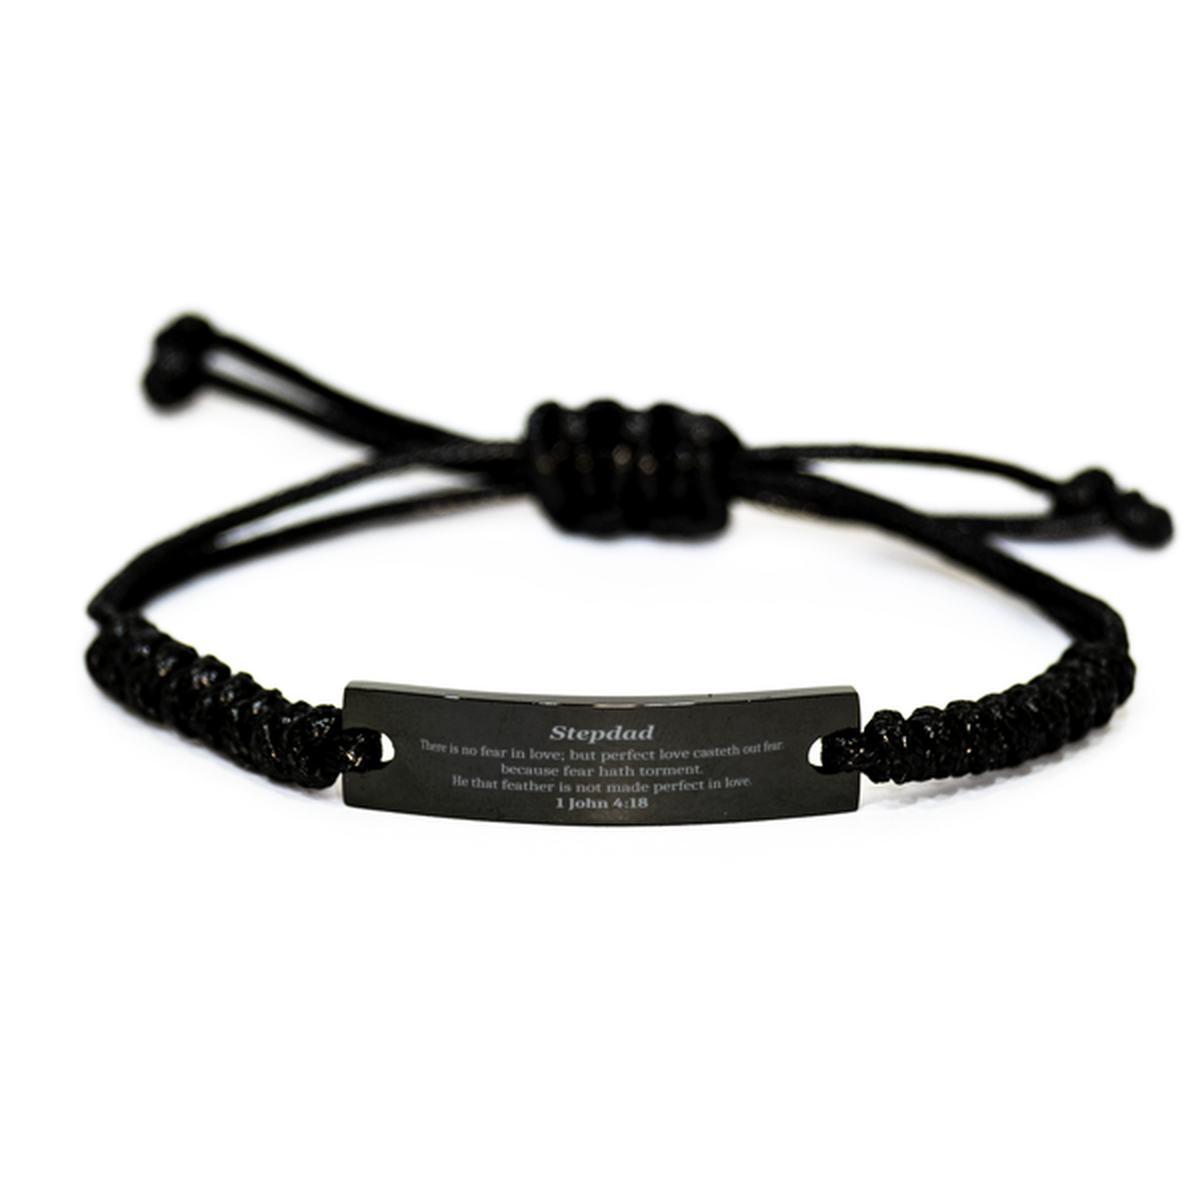 Stepdad Inspirational Black Rope Bracelet 1 John 4:18 Gift for Him Birthday Christmas